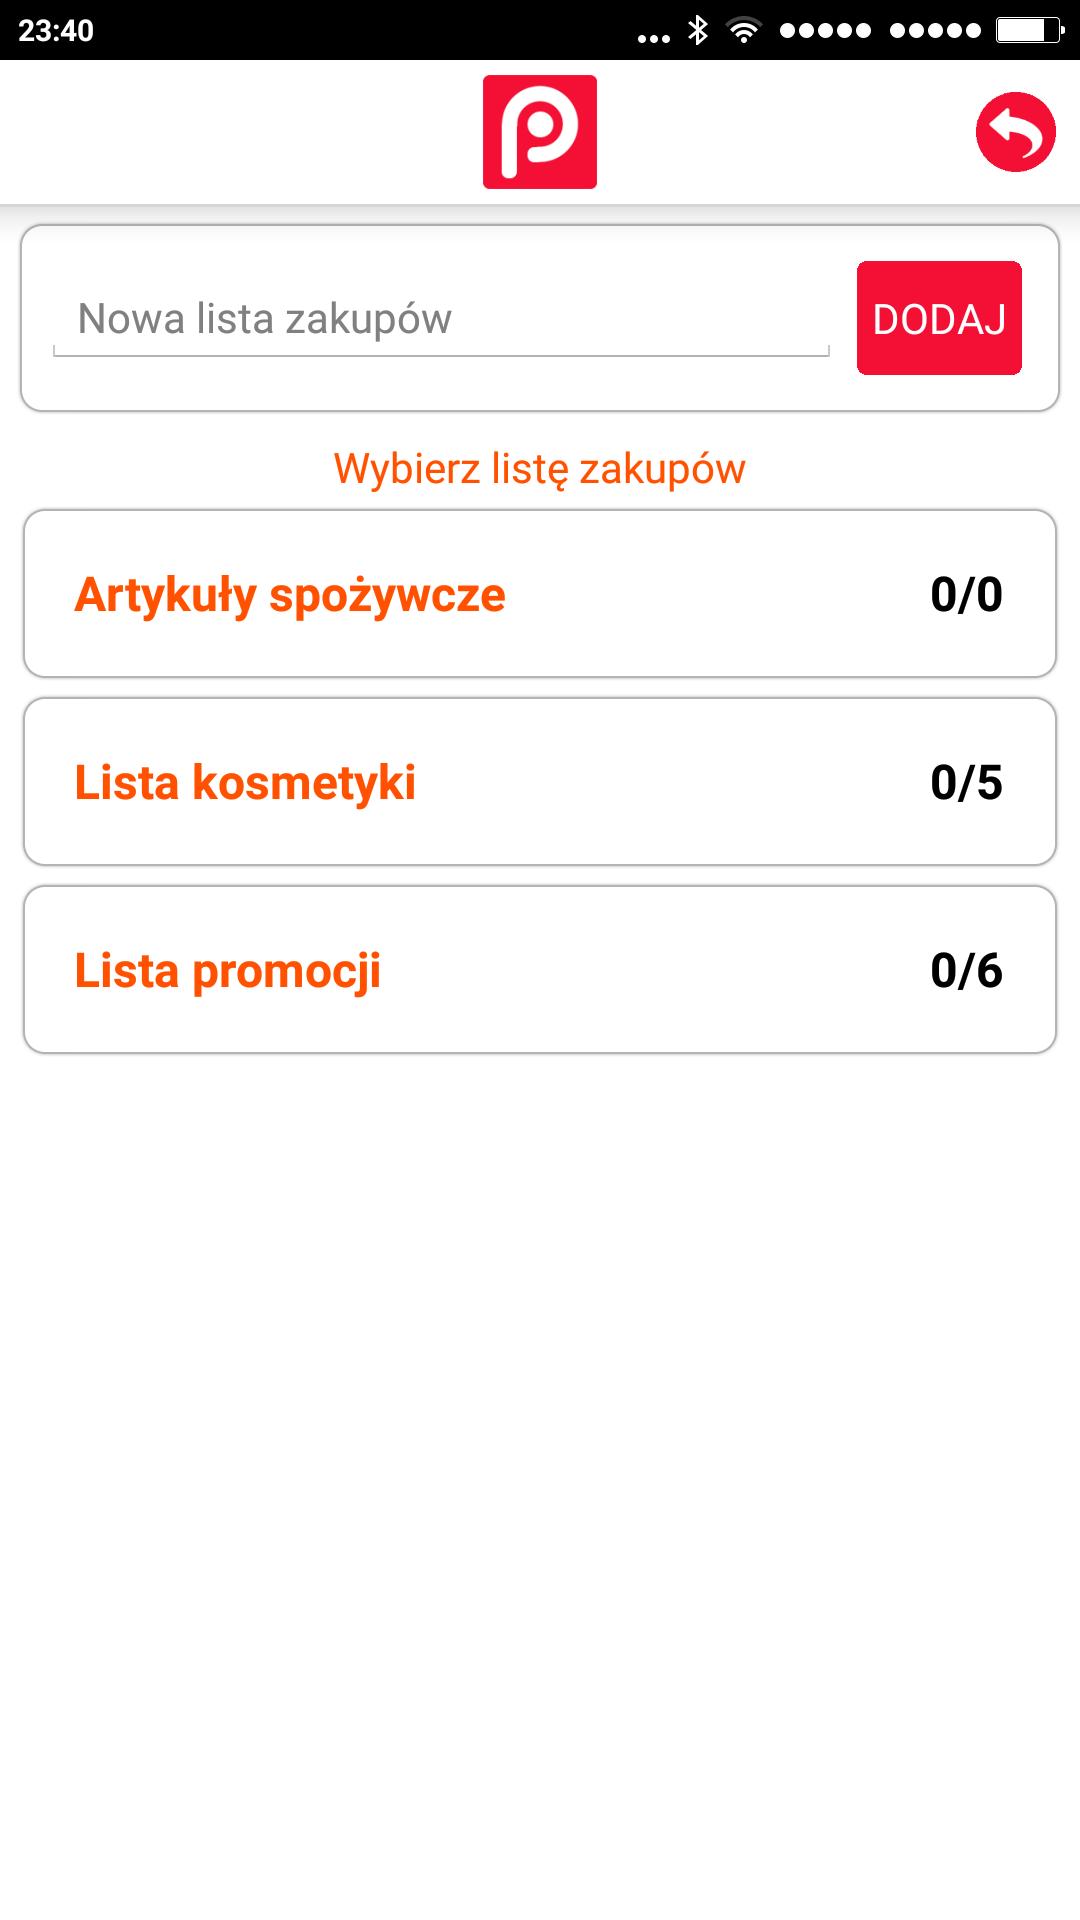 Polskie Promocje zniżki rabaty for Android - APK Download